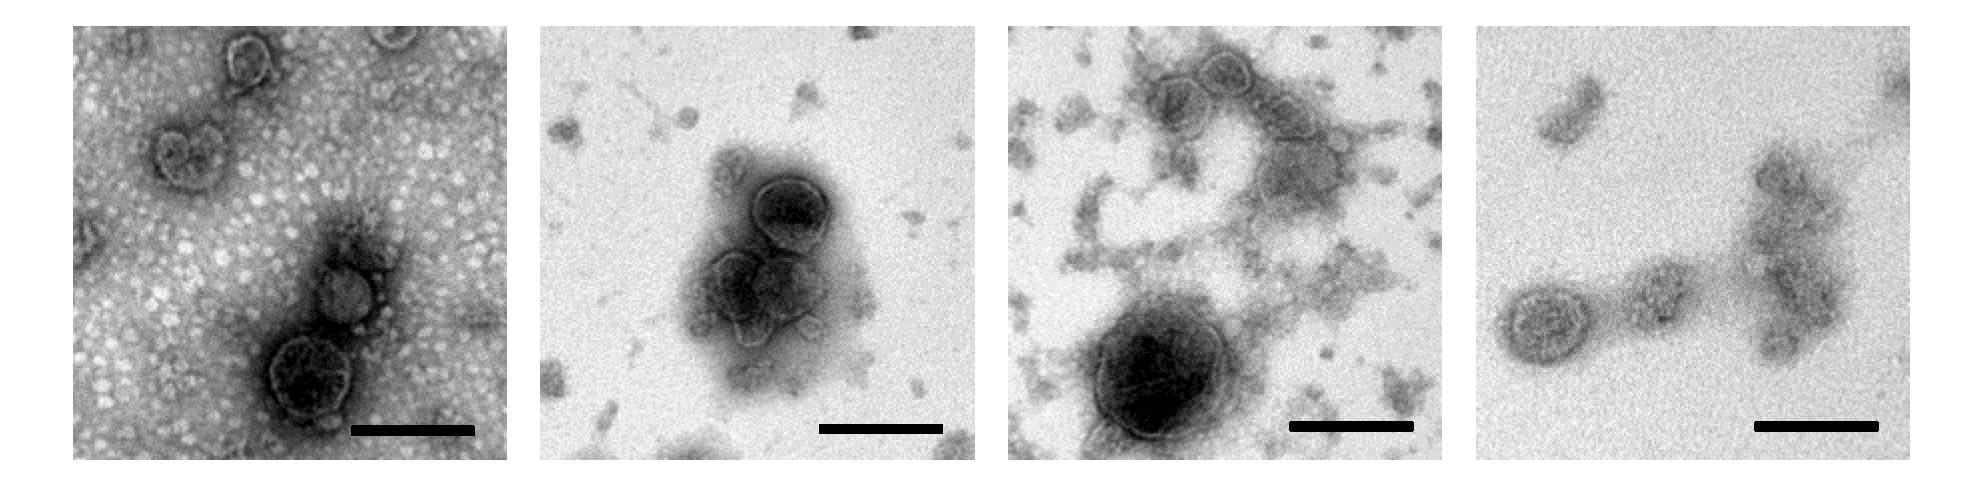 재조합 TN-5B14/M1-6xM2e-HA-TMD 세포 배양배지의 sucrose cushion 초원심분리, 밀도구배 초원심분리를 통해 확보한 2, 3, 4번 분획 혼합물에 VLP가 존재하는 것을 전자현미경 관찰로 확인함